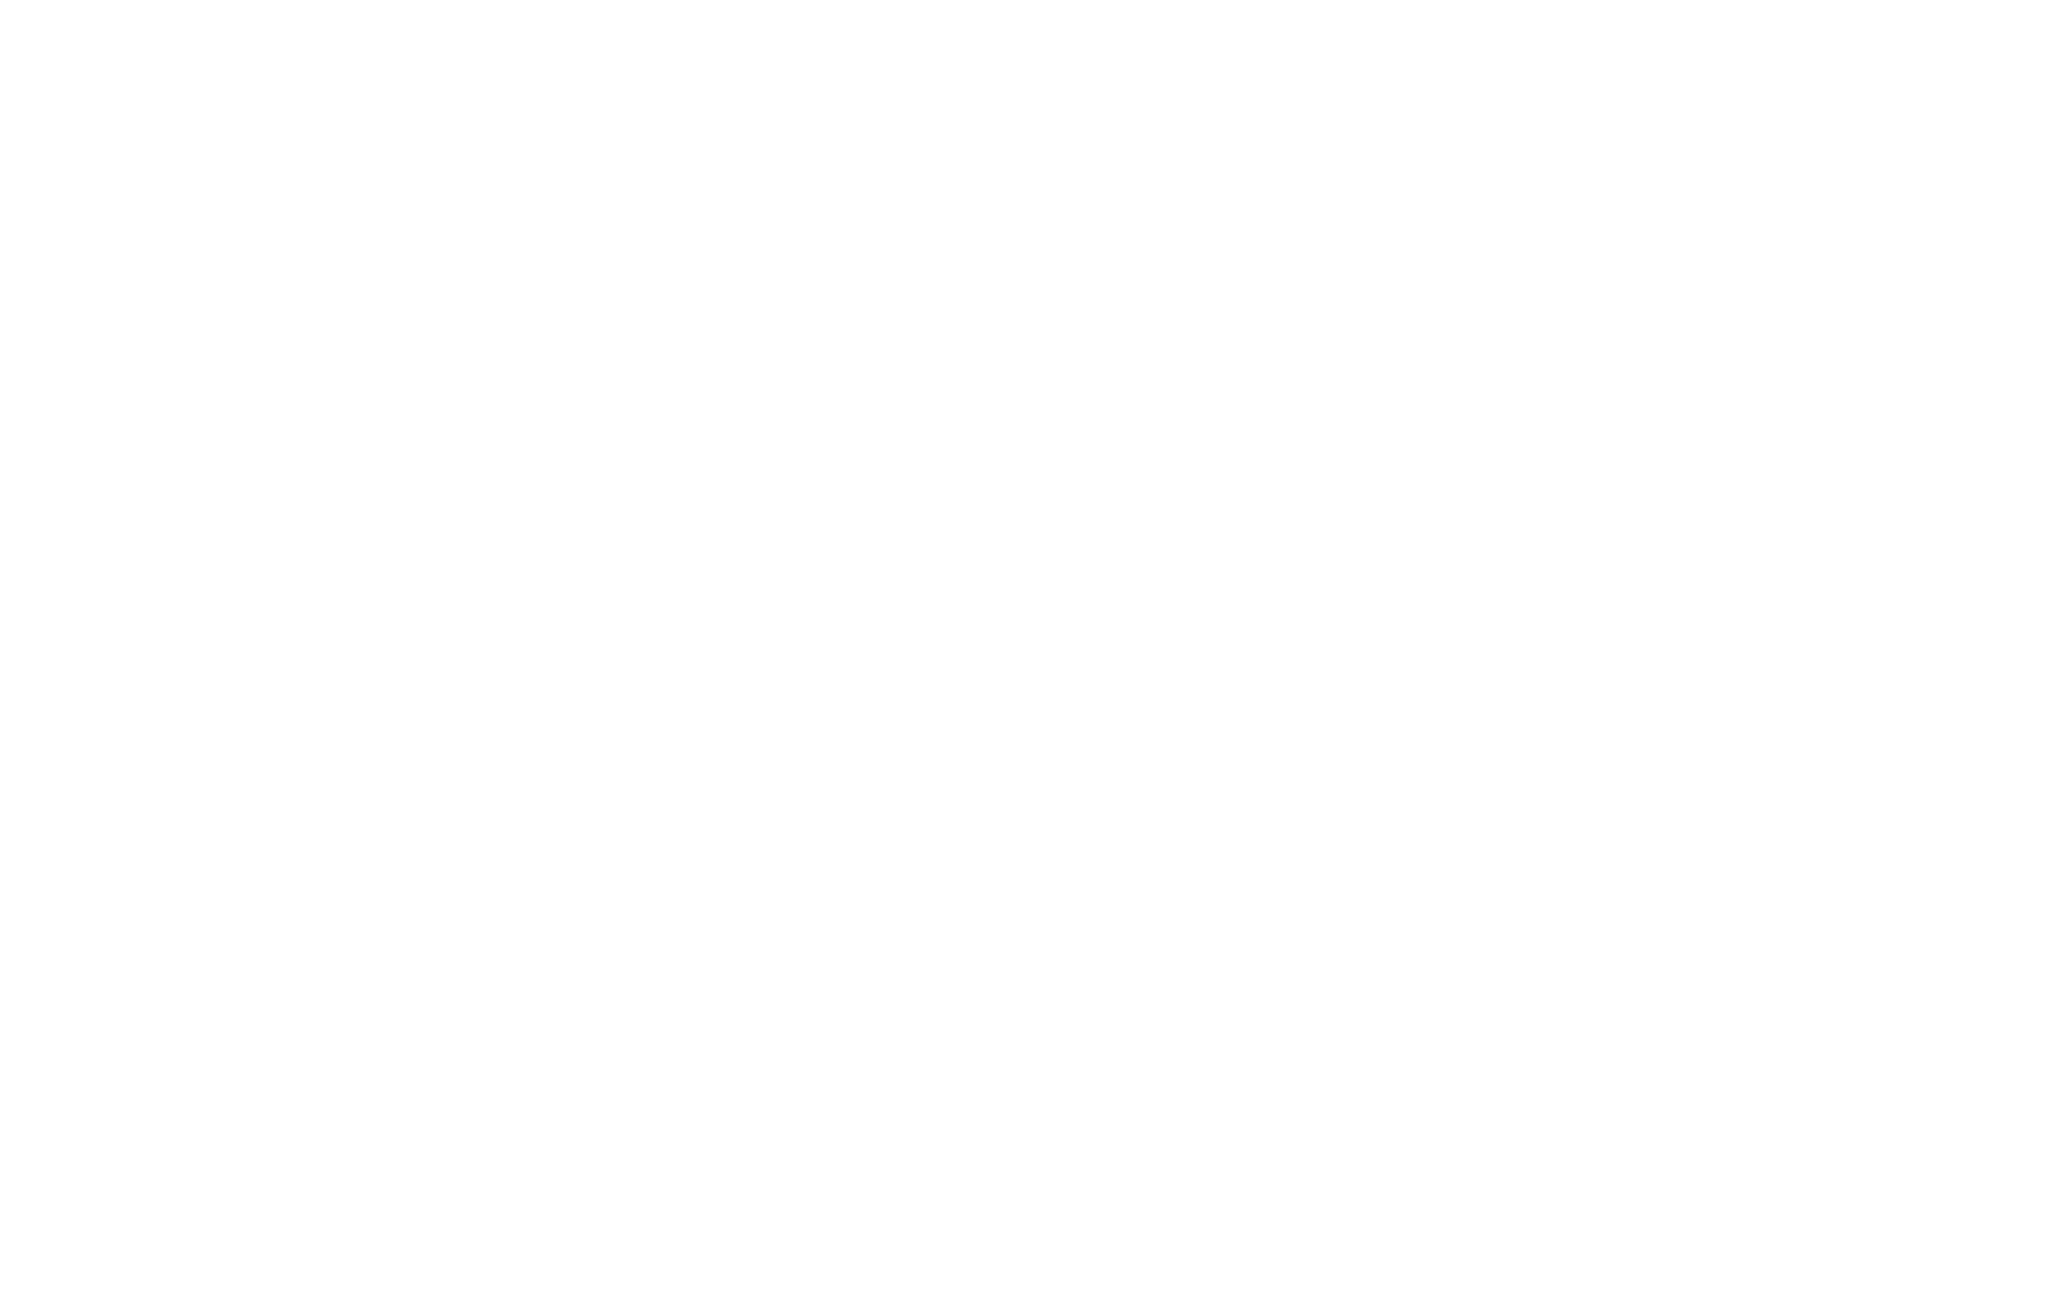 ZAHA